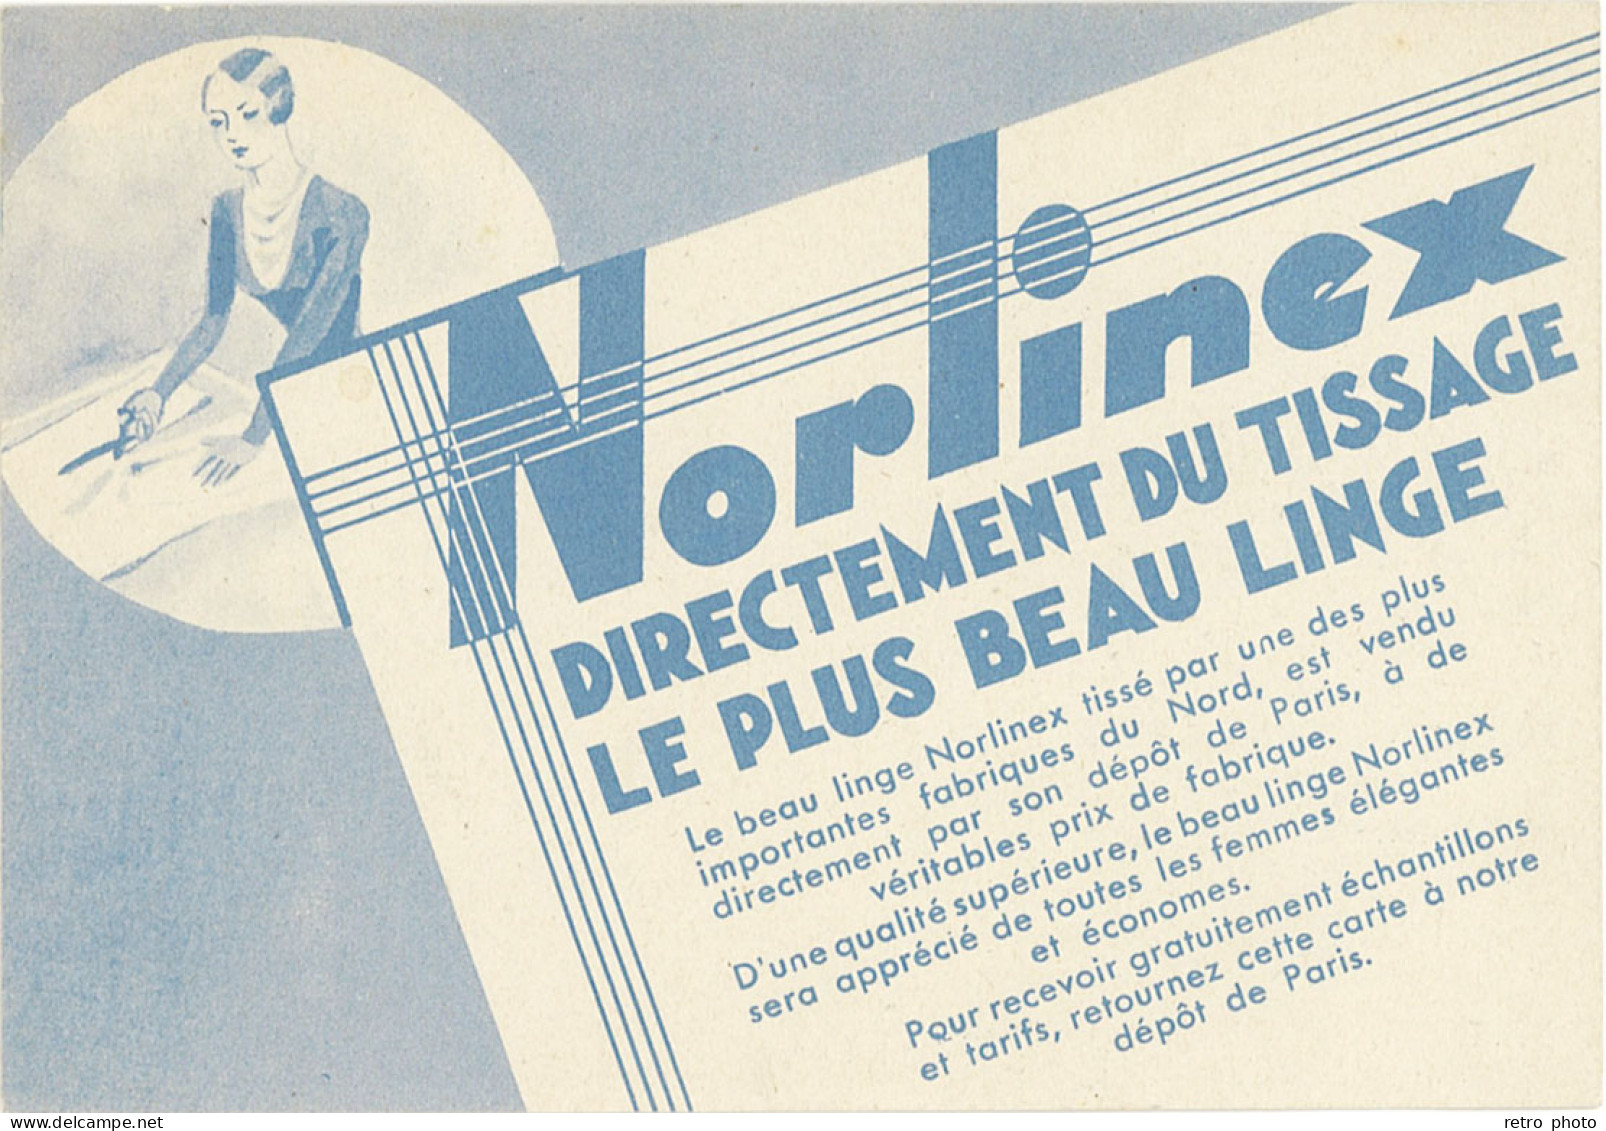 TB Norlinex Directement Du Tissage, Le Plus Beau Linge - Publicité